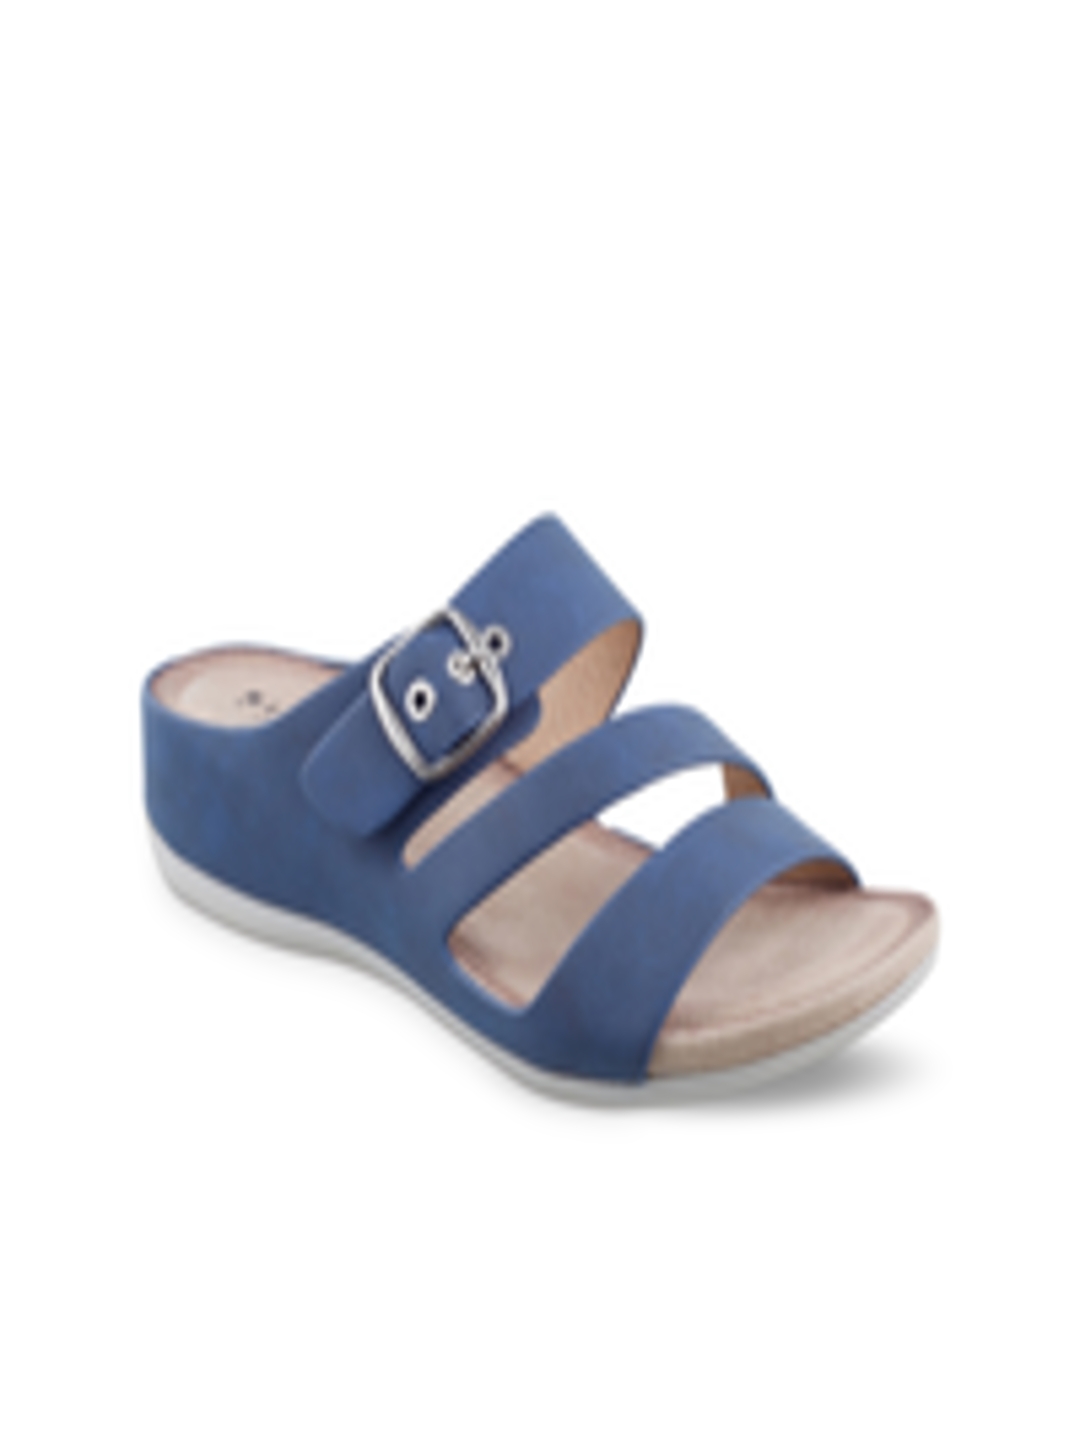 Buy Wet Blue Women Navy Blue Solid Sandals - Heels for Women 2421082 ...